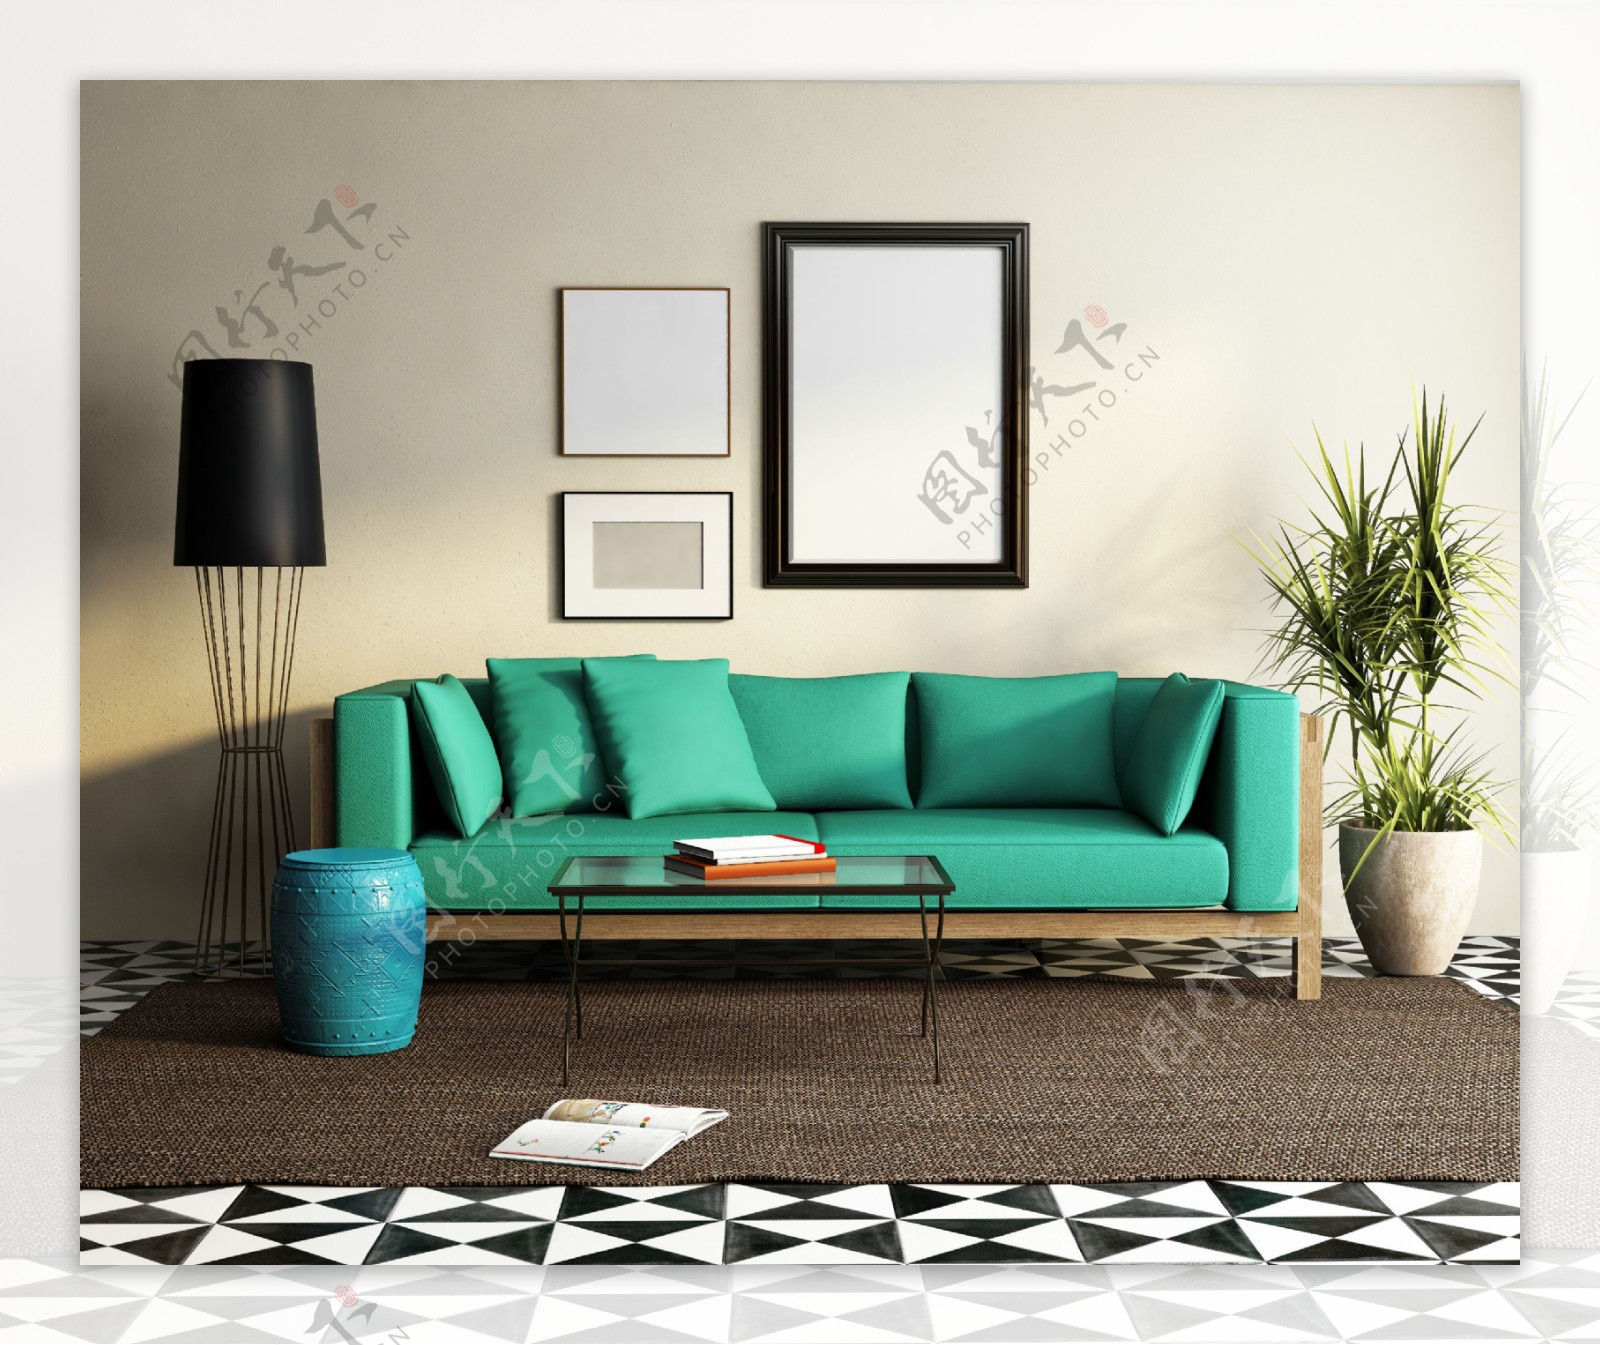 绿色沙发和壁画设计